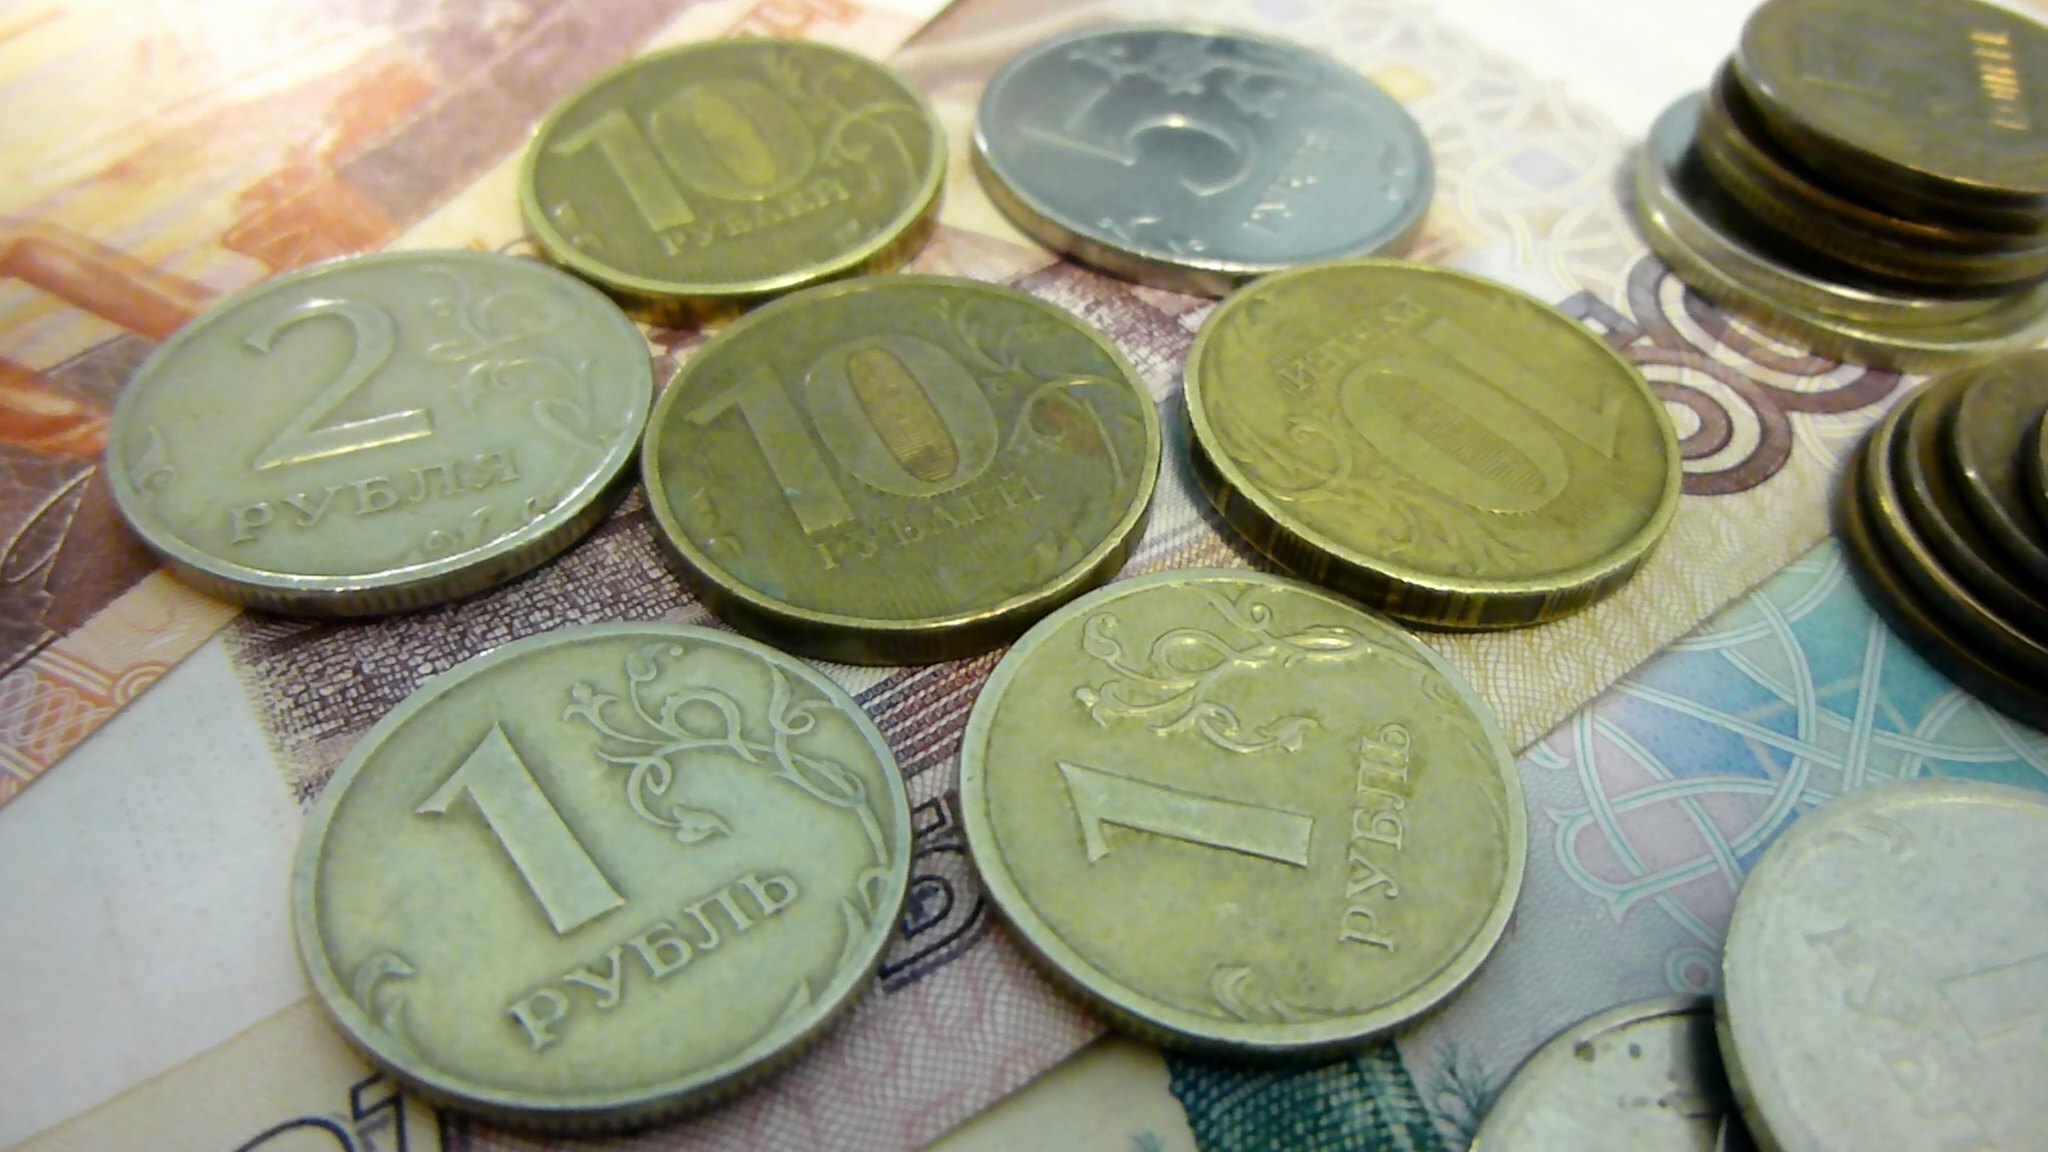 Хотел купить еды: тюменца осудят за кражу денег из ящика для пожертвований